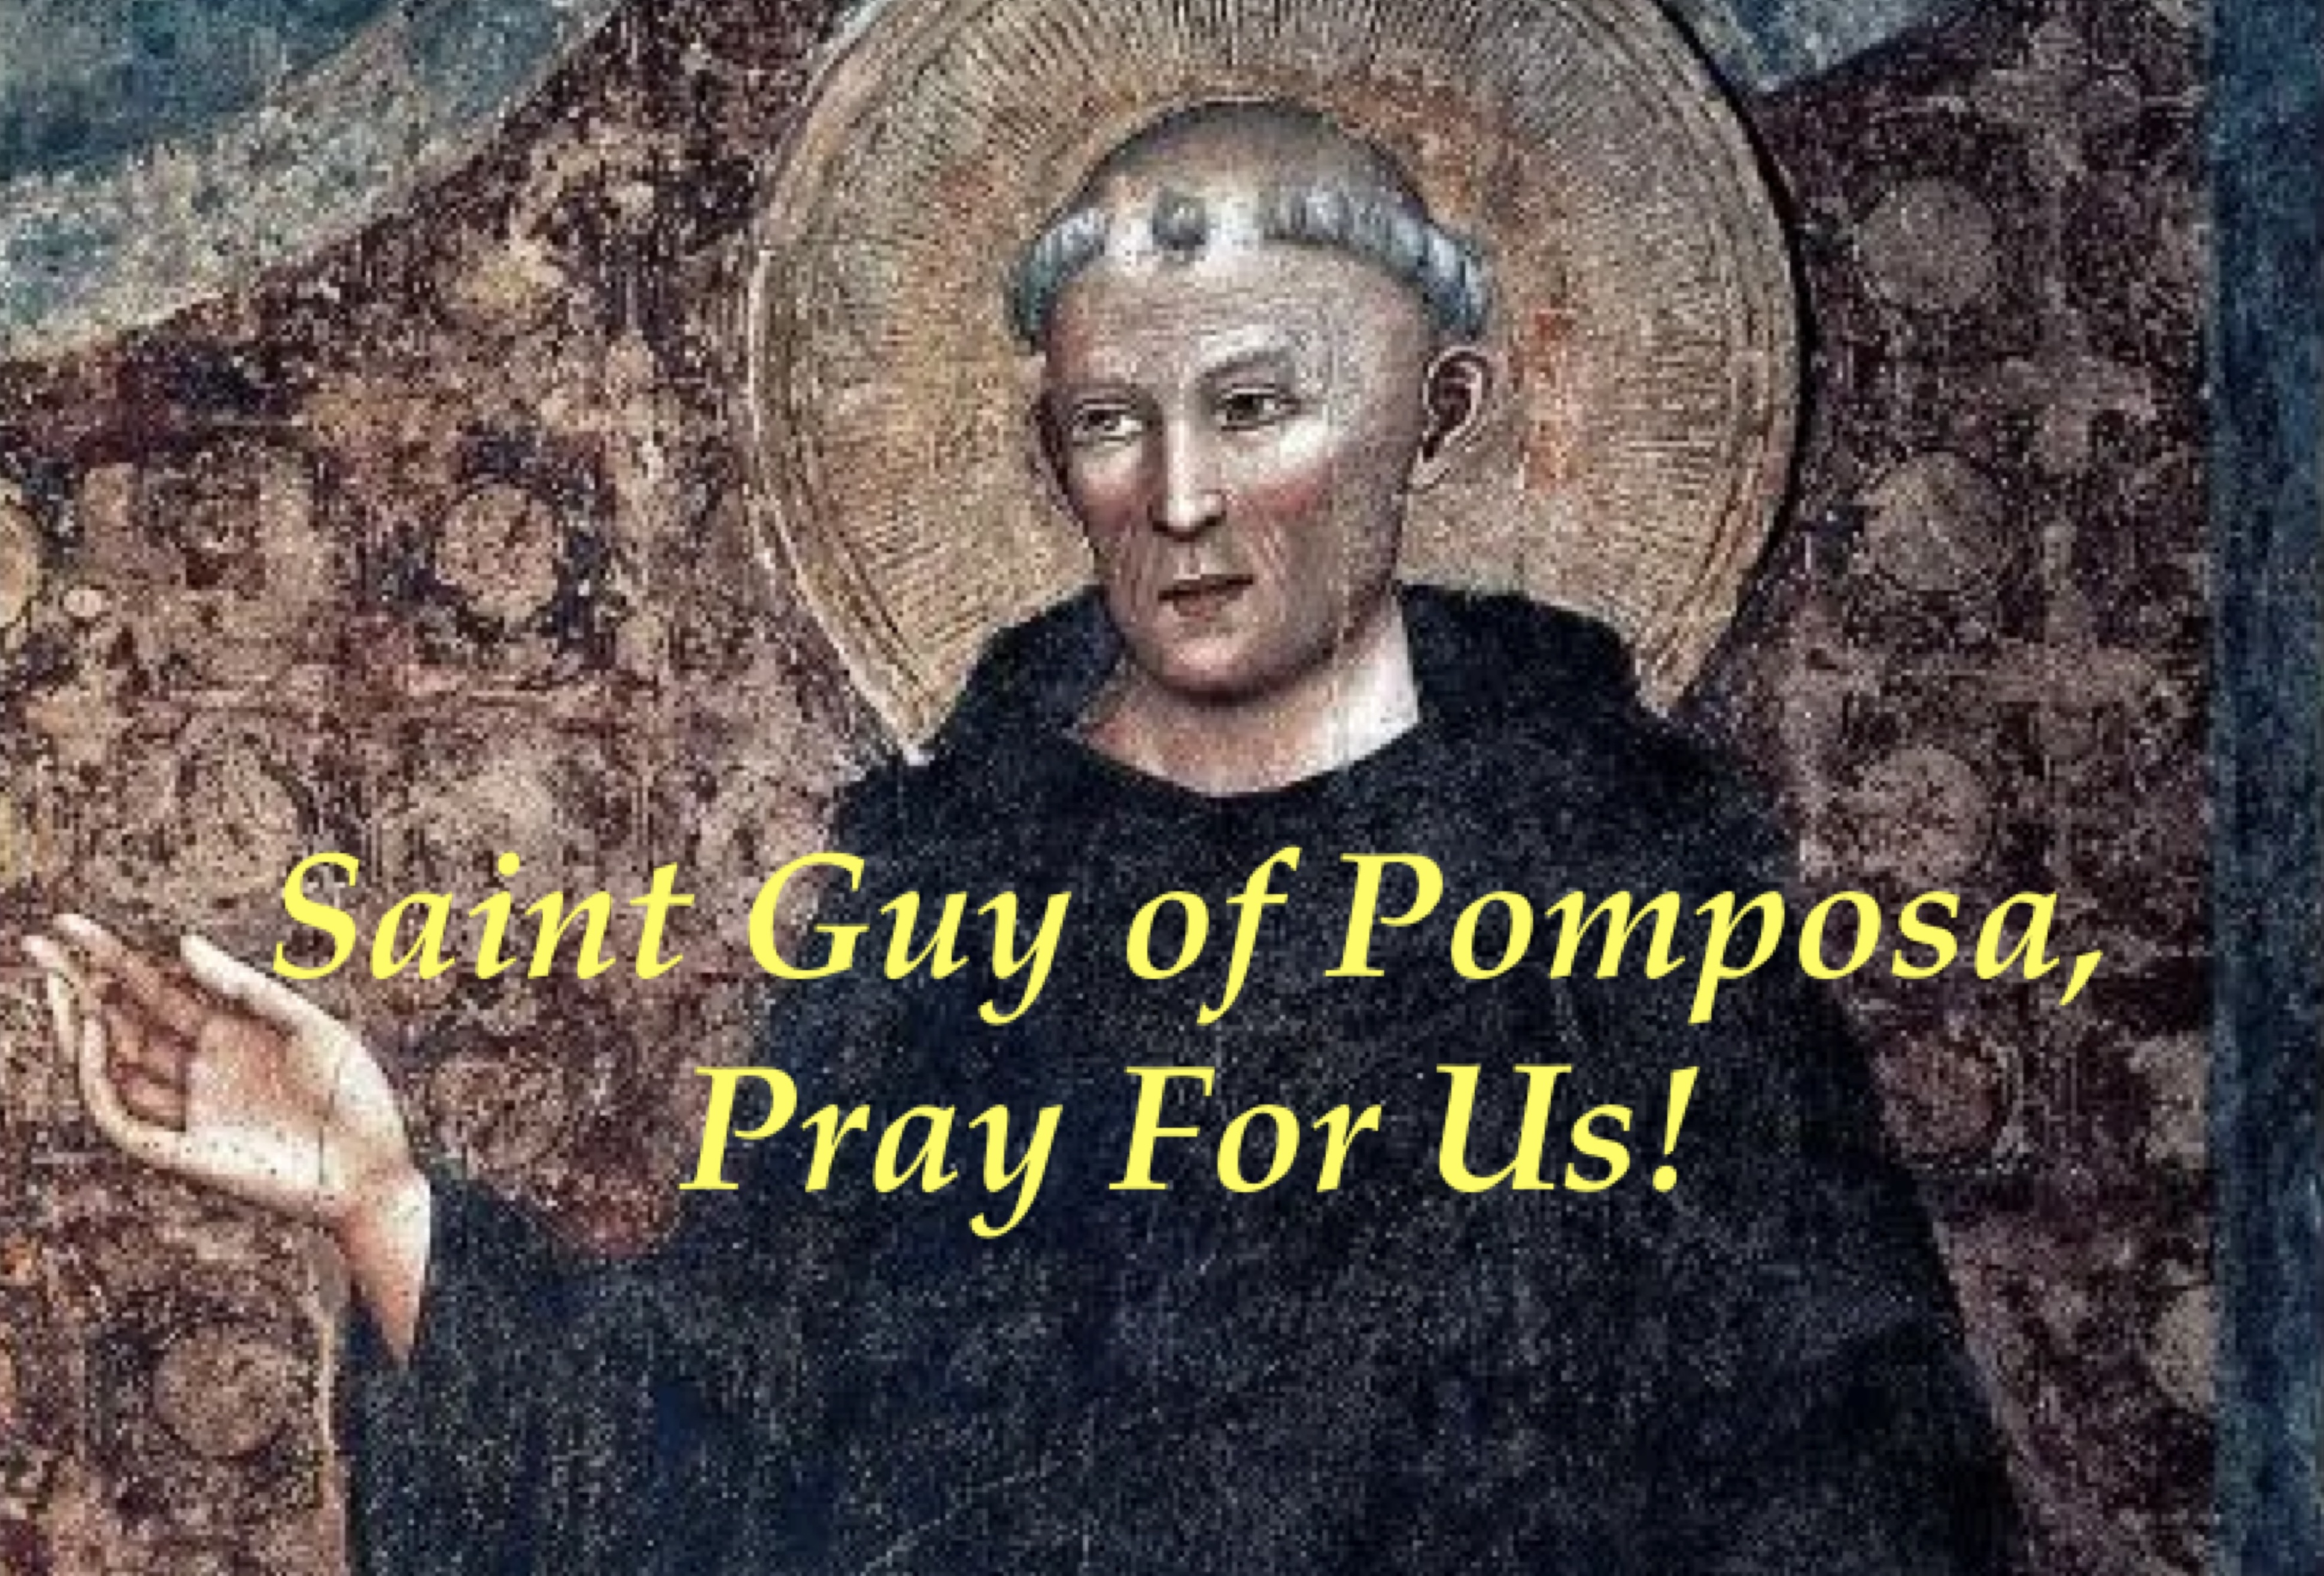 31st March - Saint Guy of Pomposa